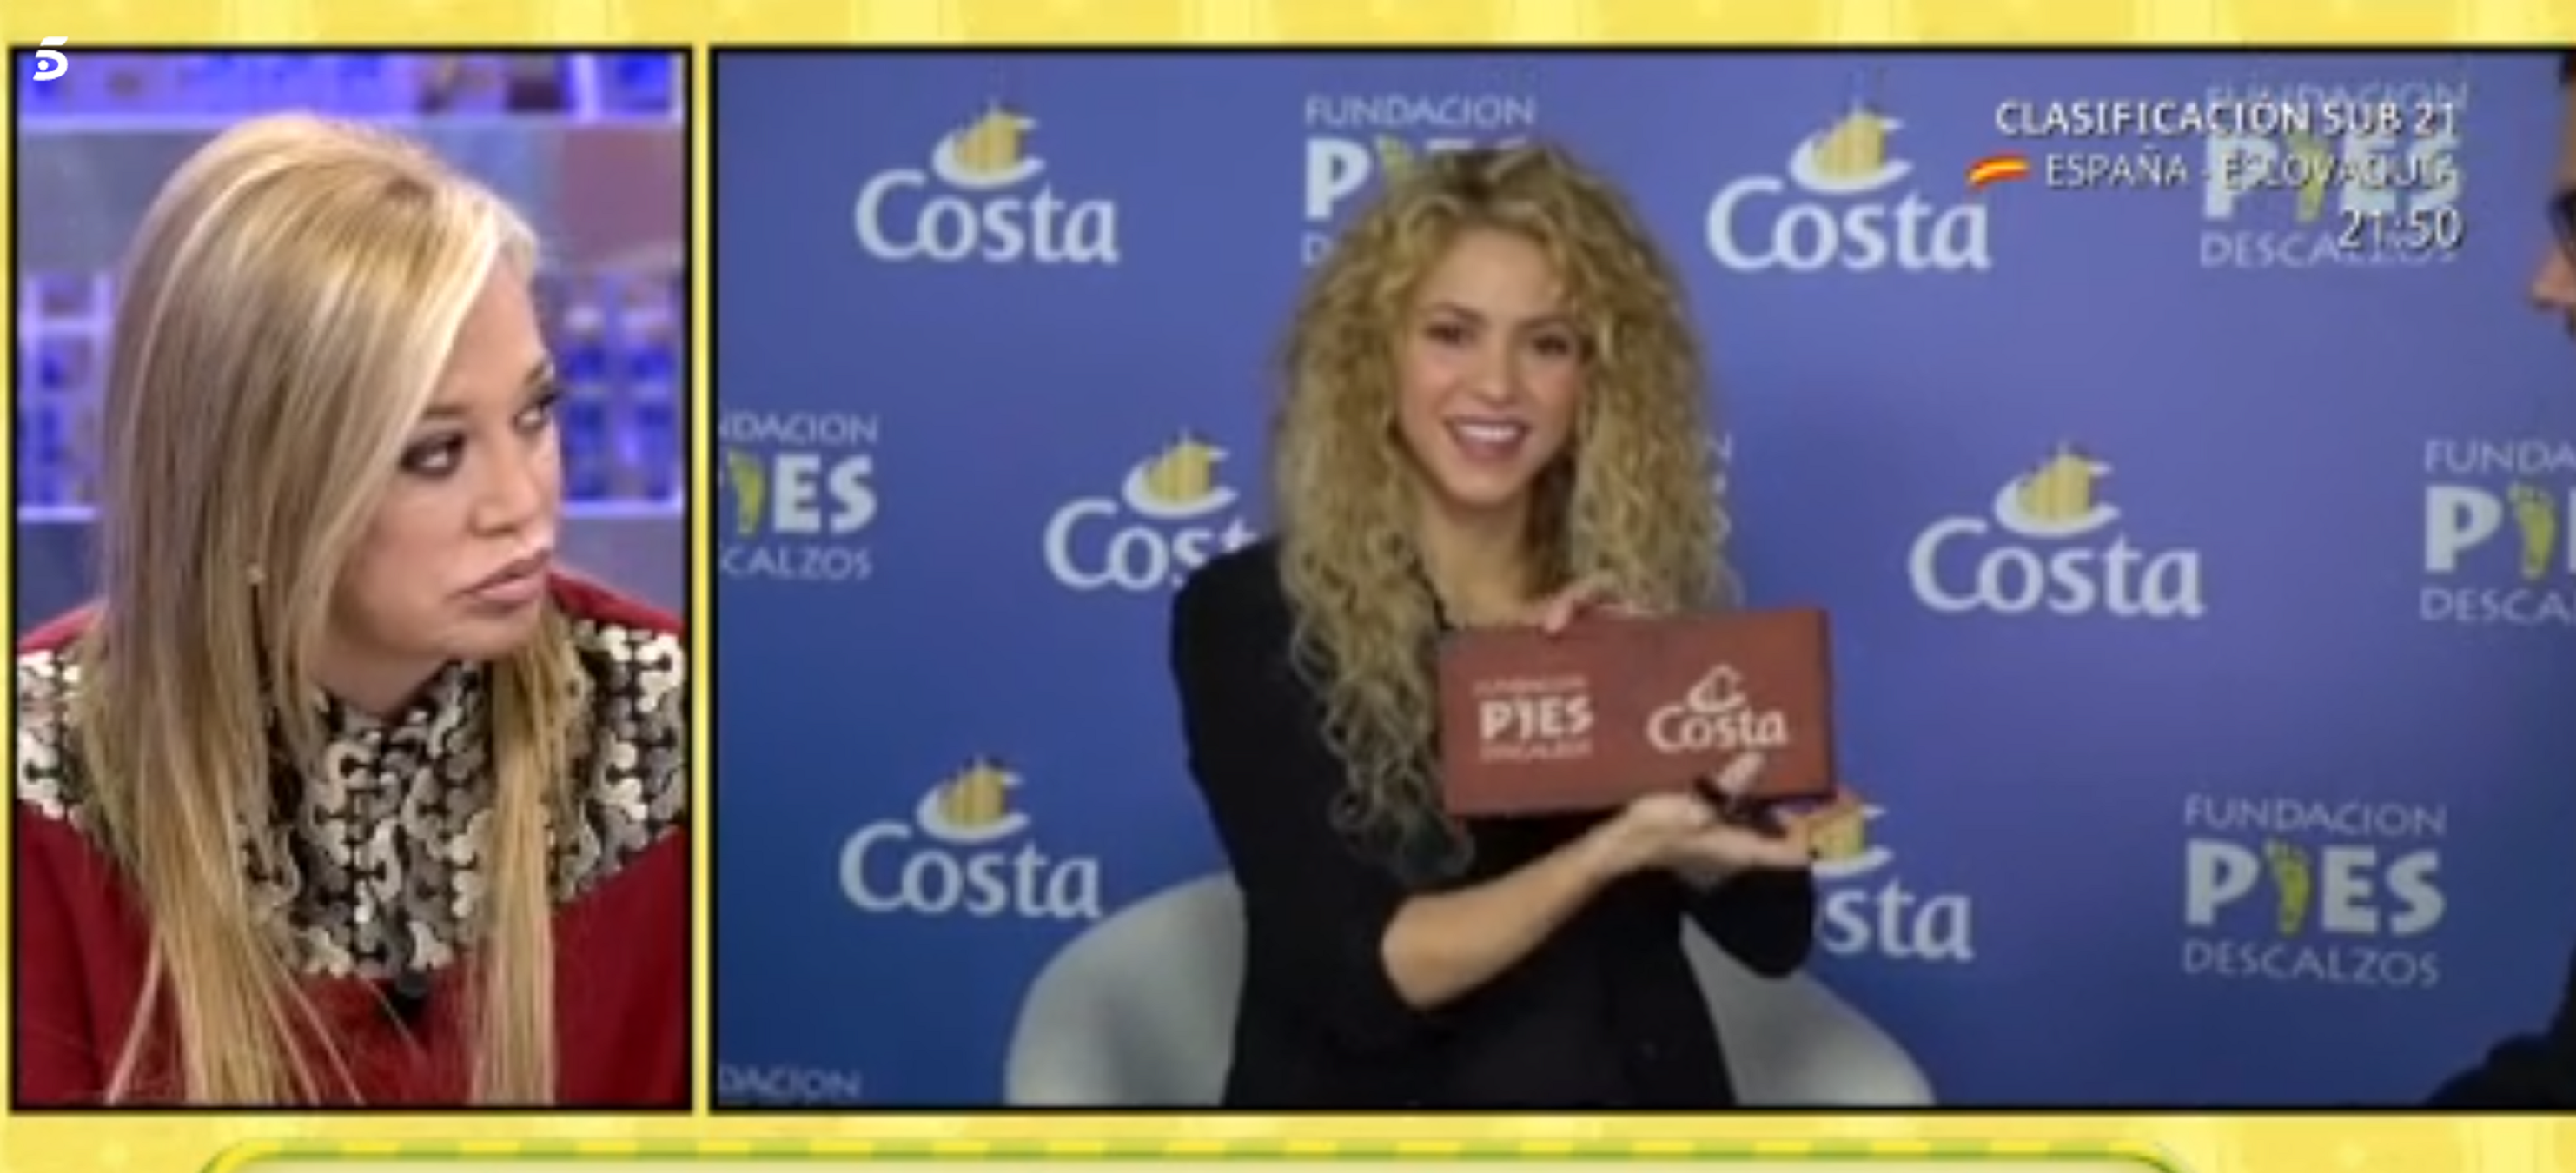 Shakira, indignada: "Qui és Belén Esteban?"